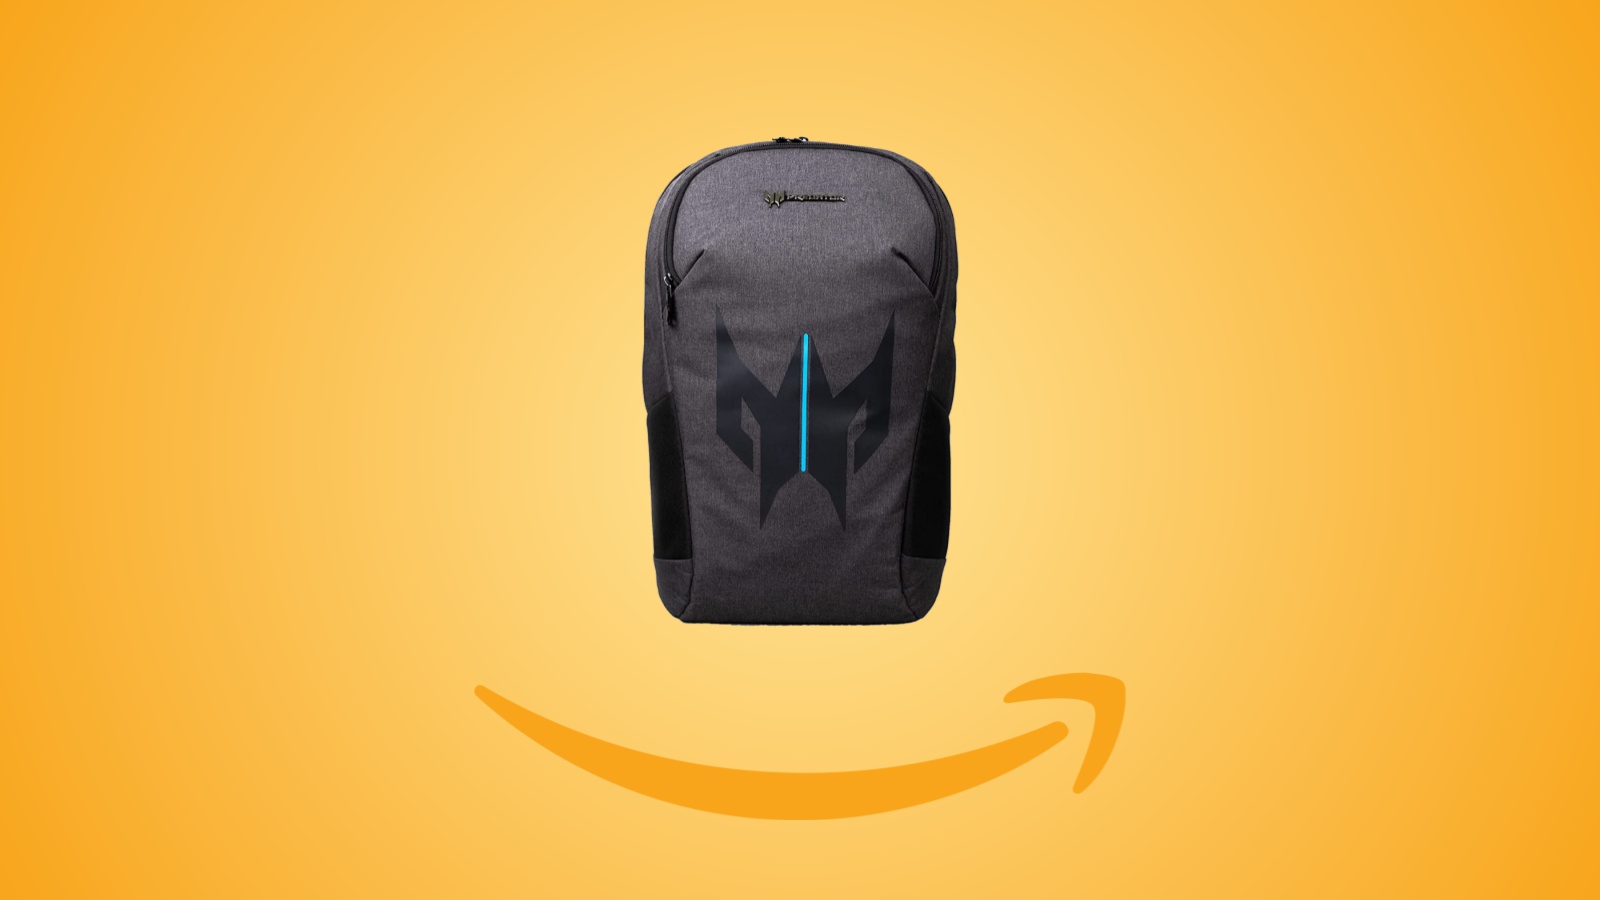 Offerte Amazon: zaino per notebook Predator in sconto al prezzo minimo storico